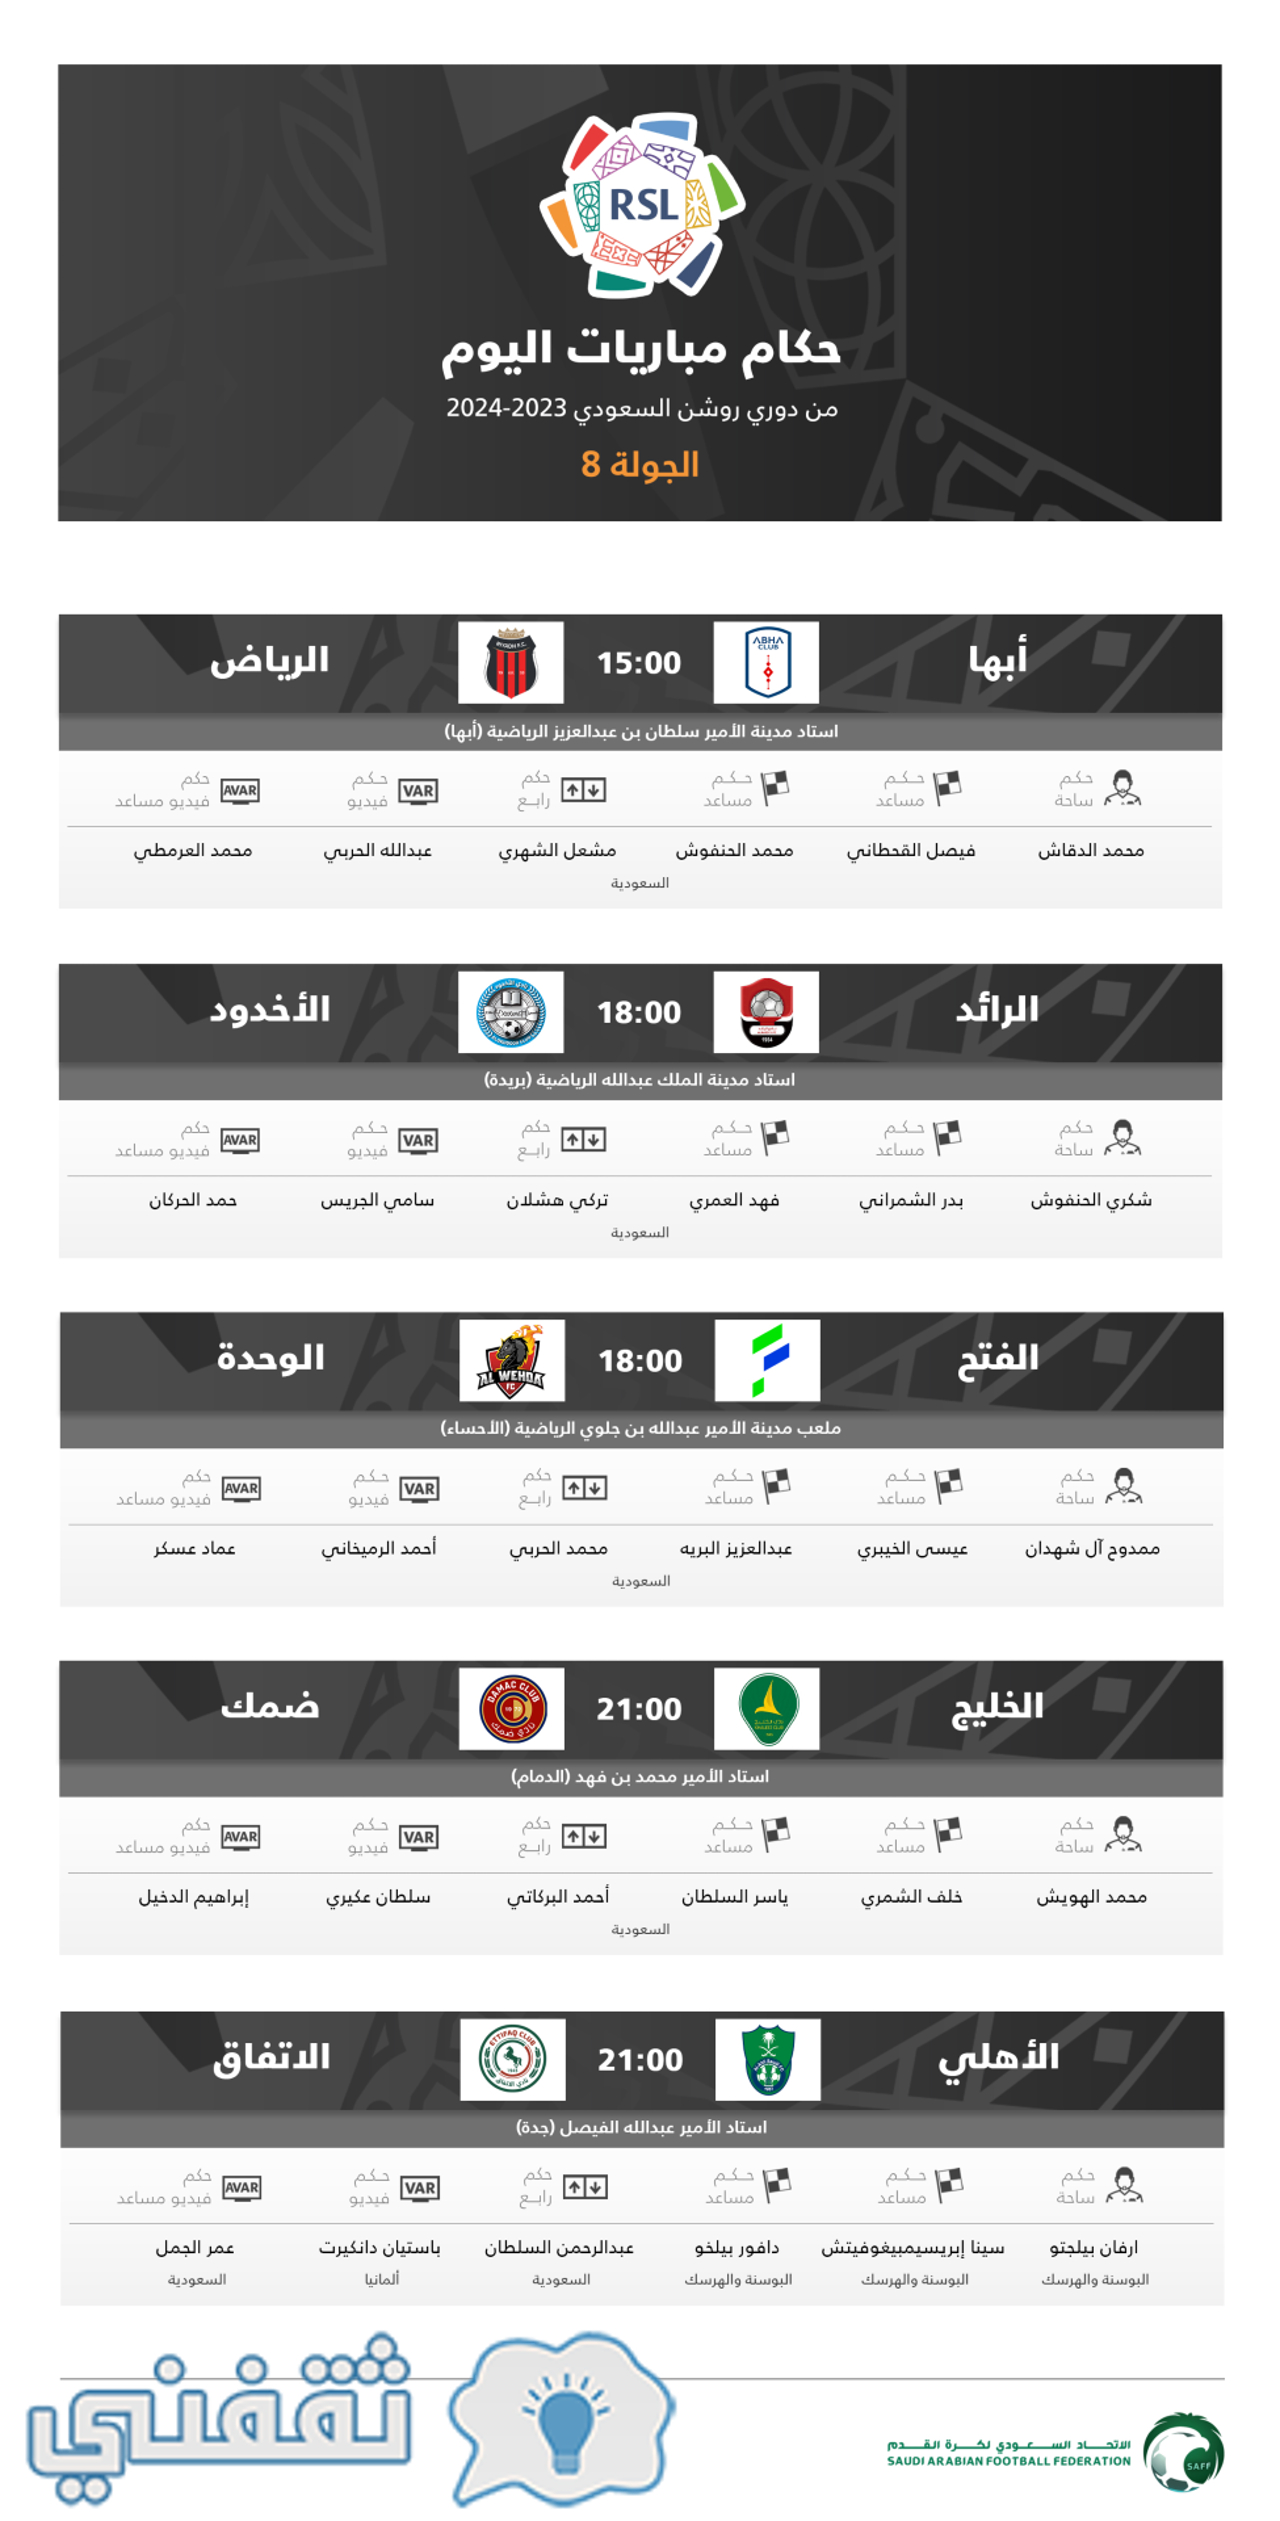 طاقم حكام مباريات اليوم الثاني (السبت) بالجولة 8 من الدوري السعودي 2023_2024